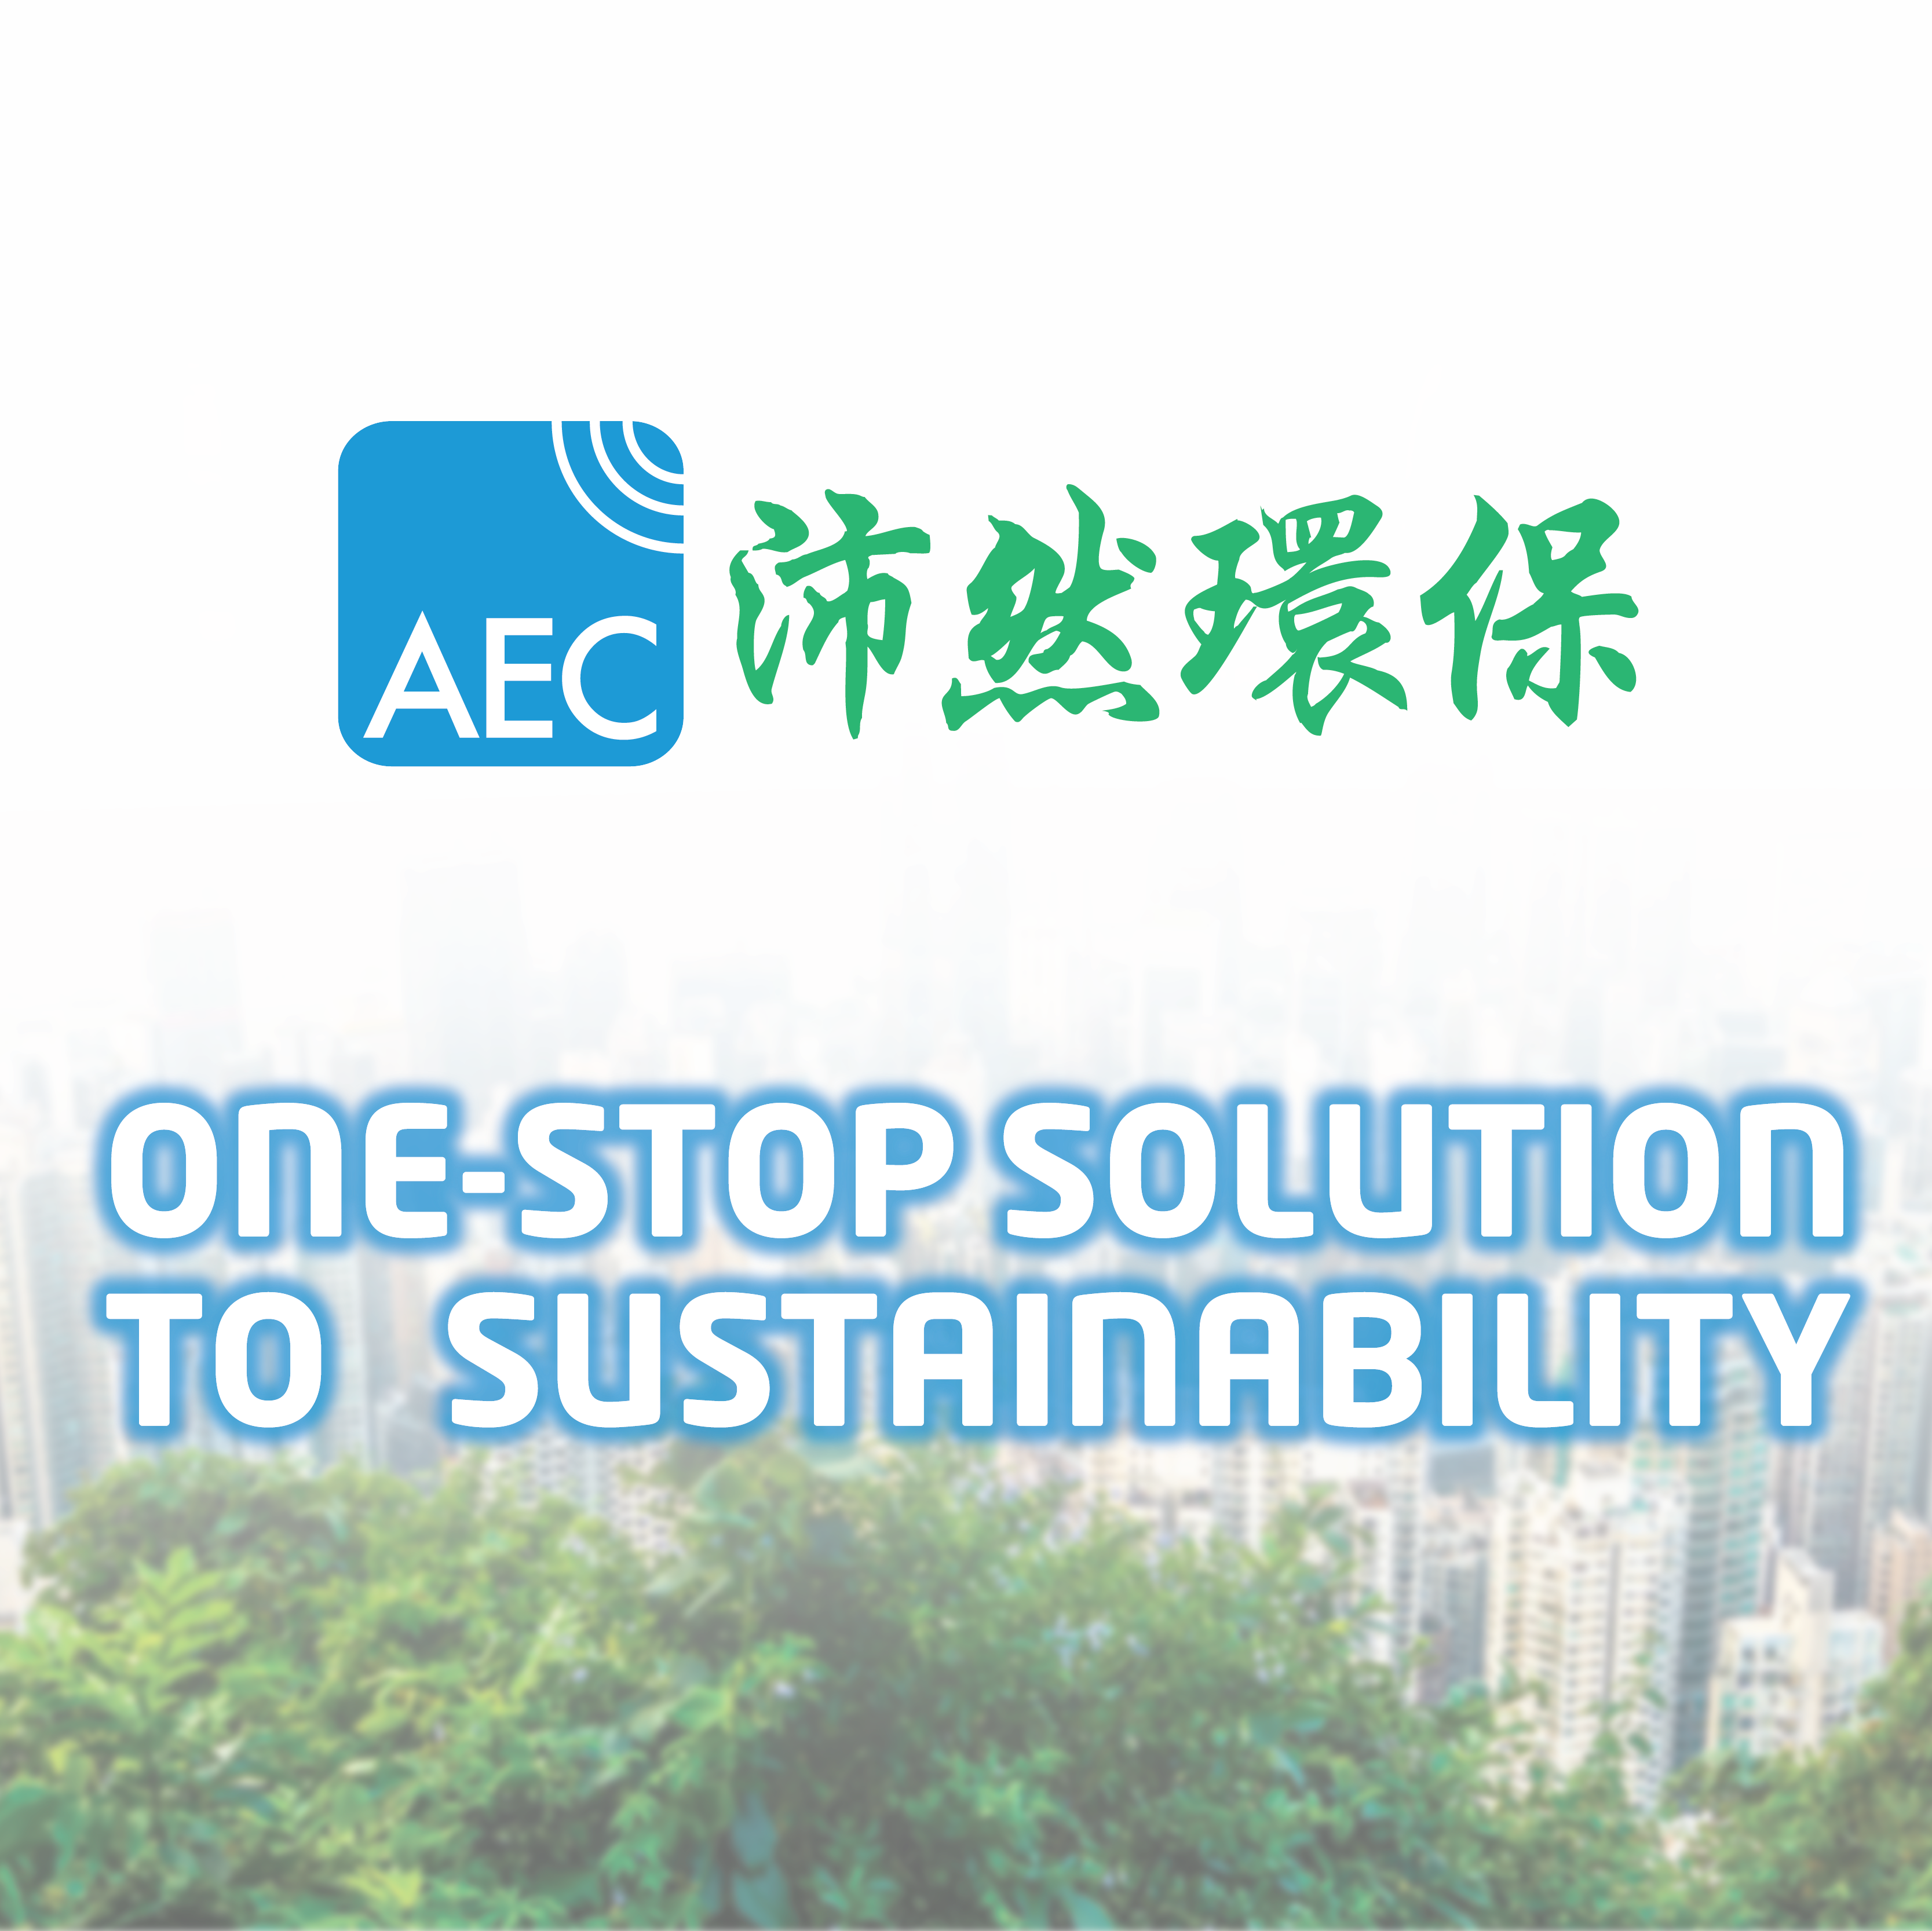 AEC Group: We Shape the Sustainable World